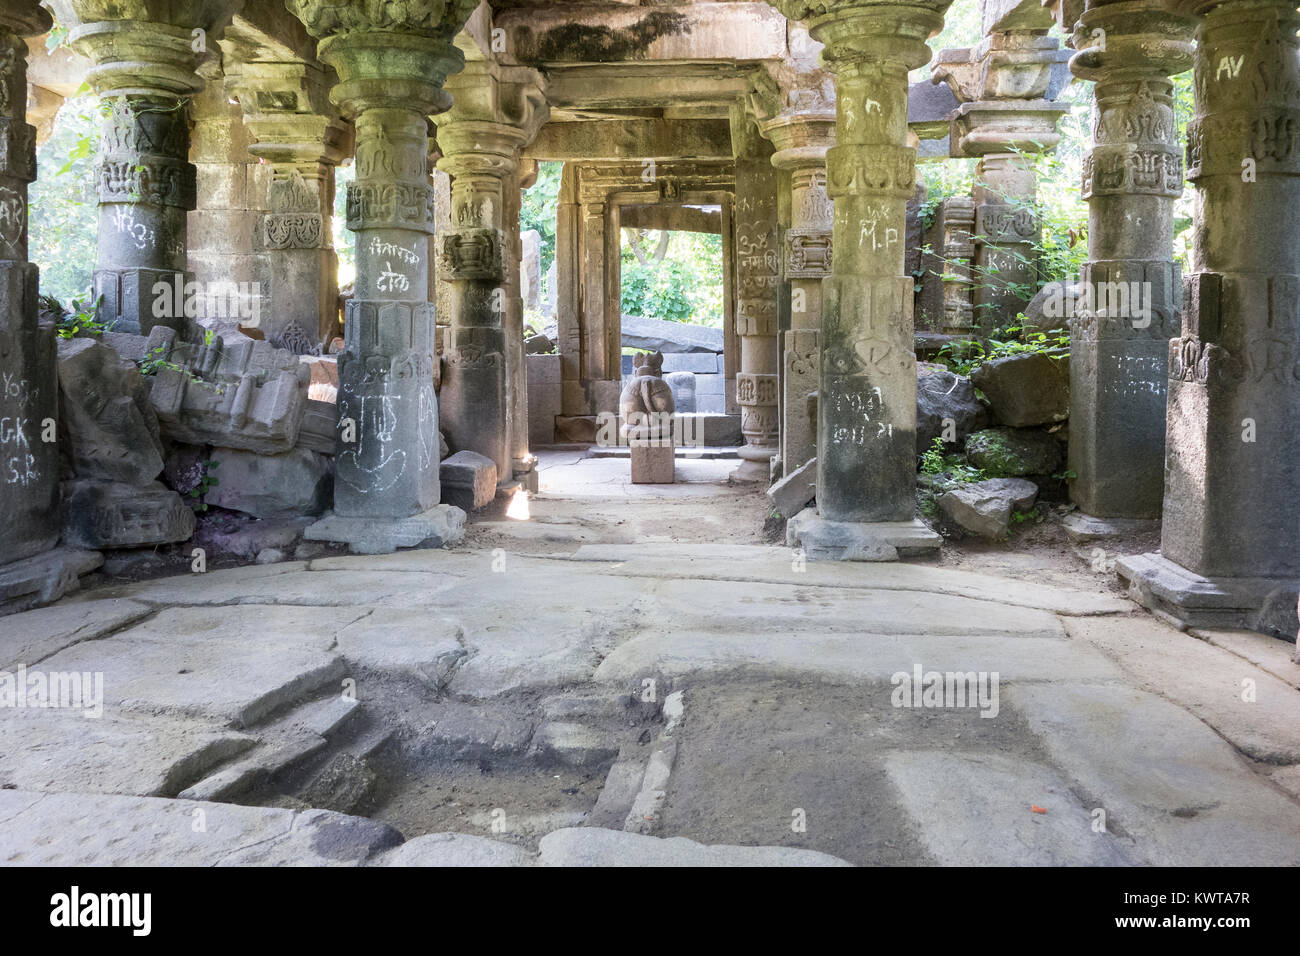 Ruines de temples en ruines, vide le long de la marge du lac Lonar, Maharashtra, Inde. Banque D'Images